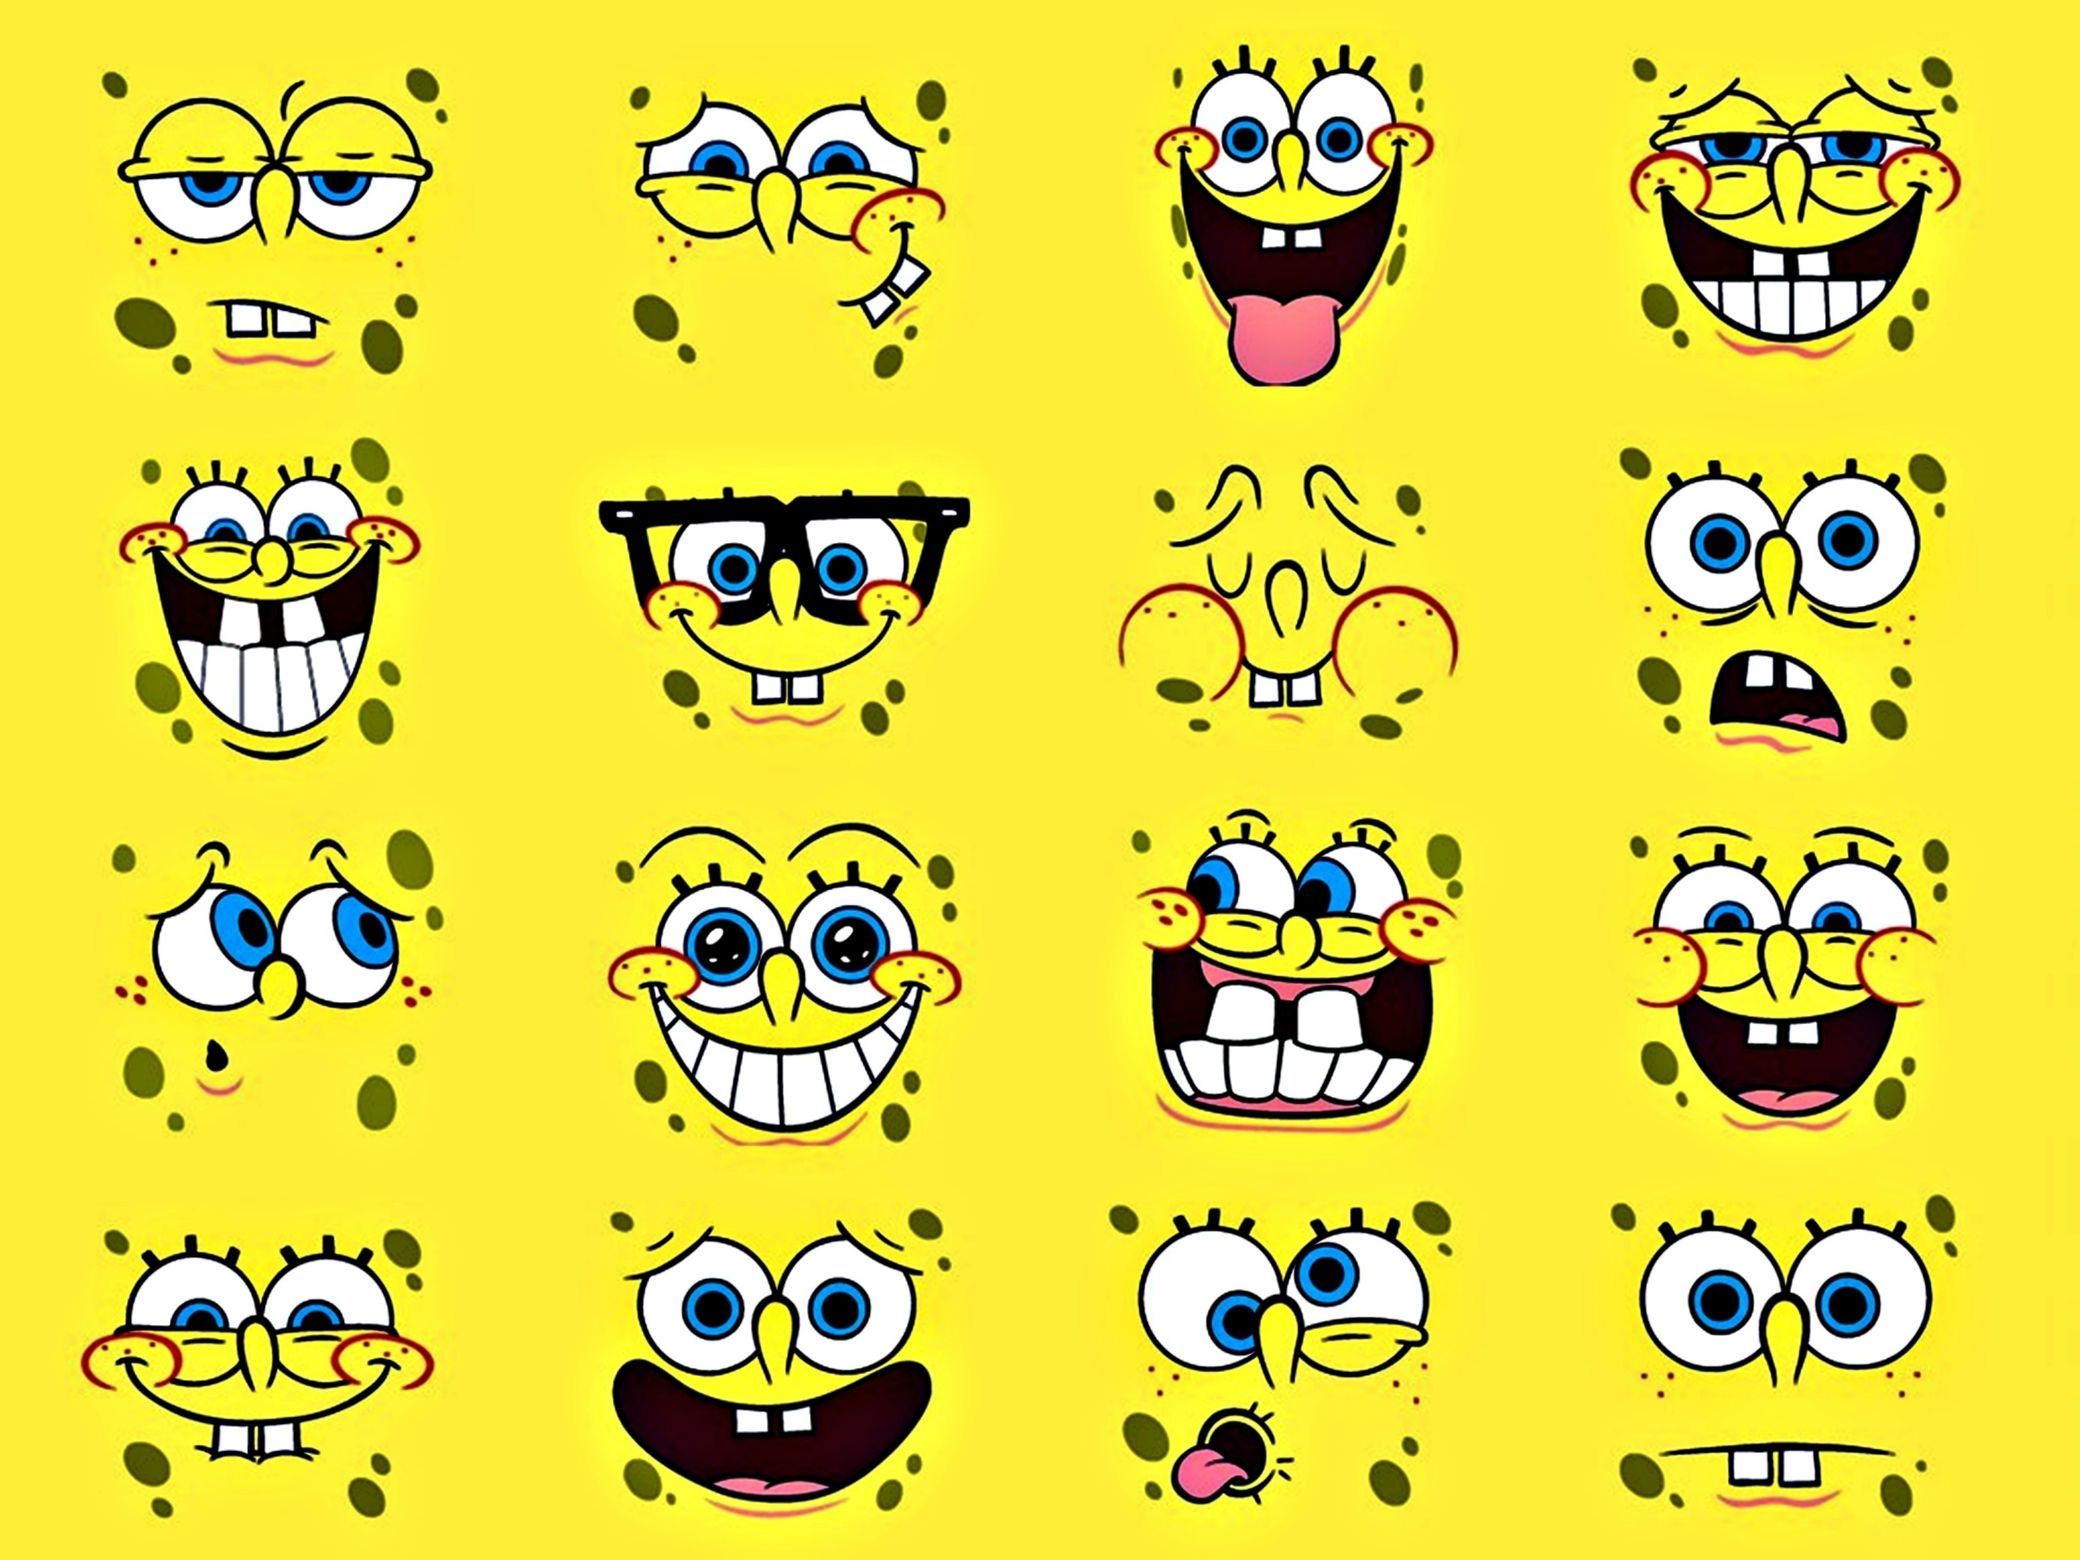 Spongebob wallpaper for desktop